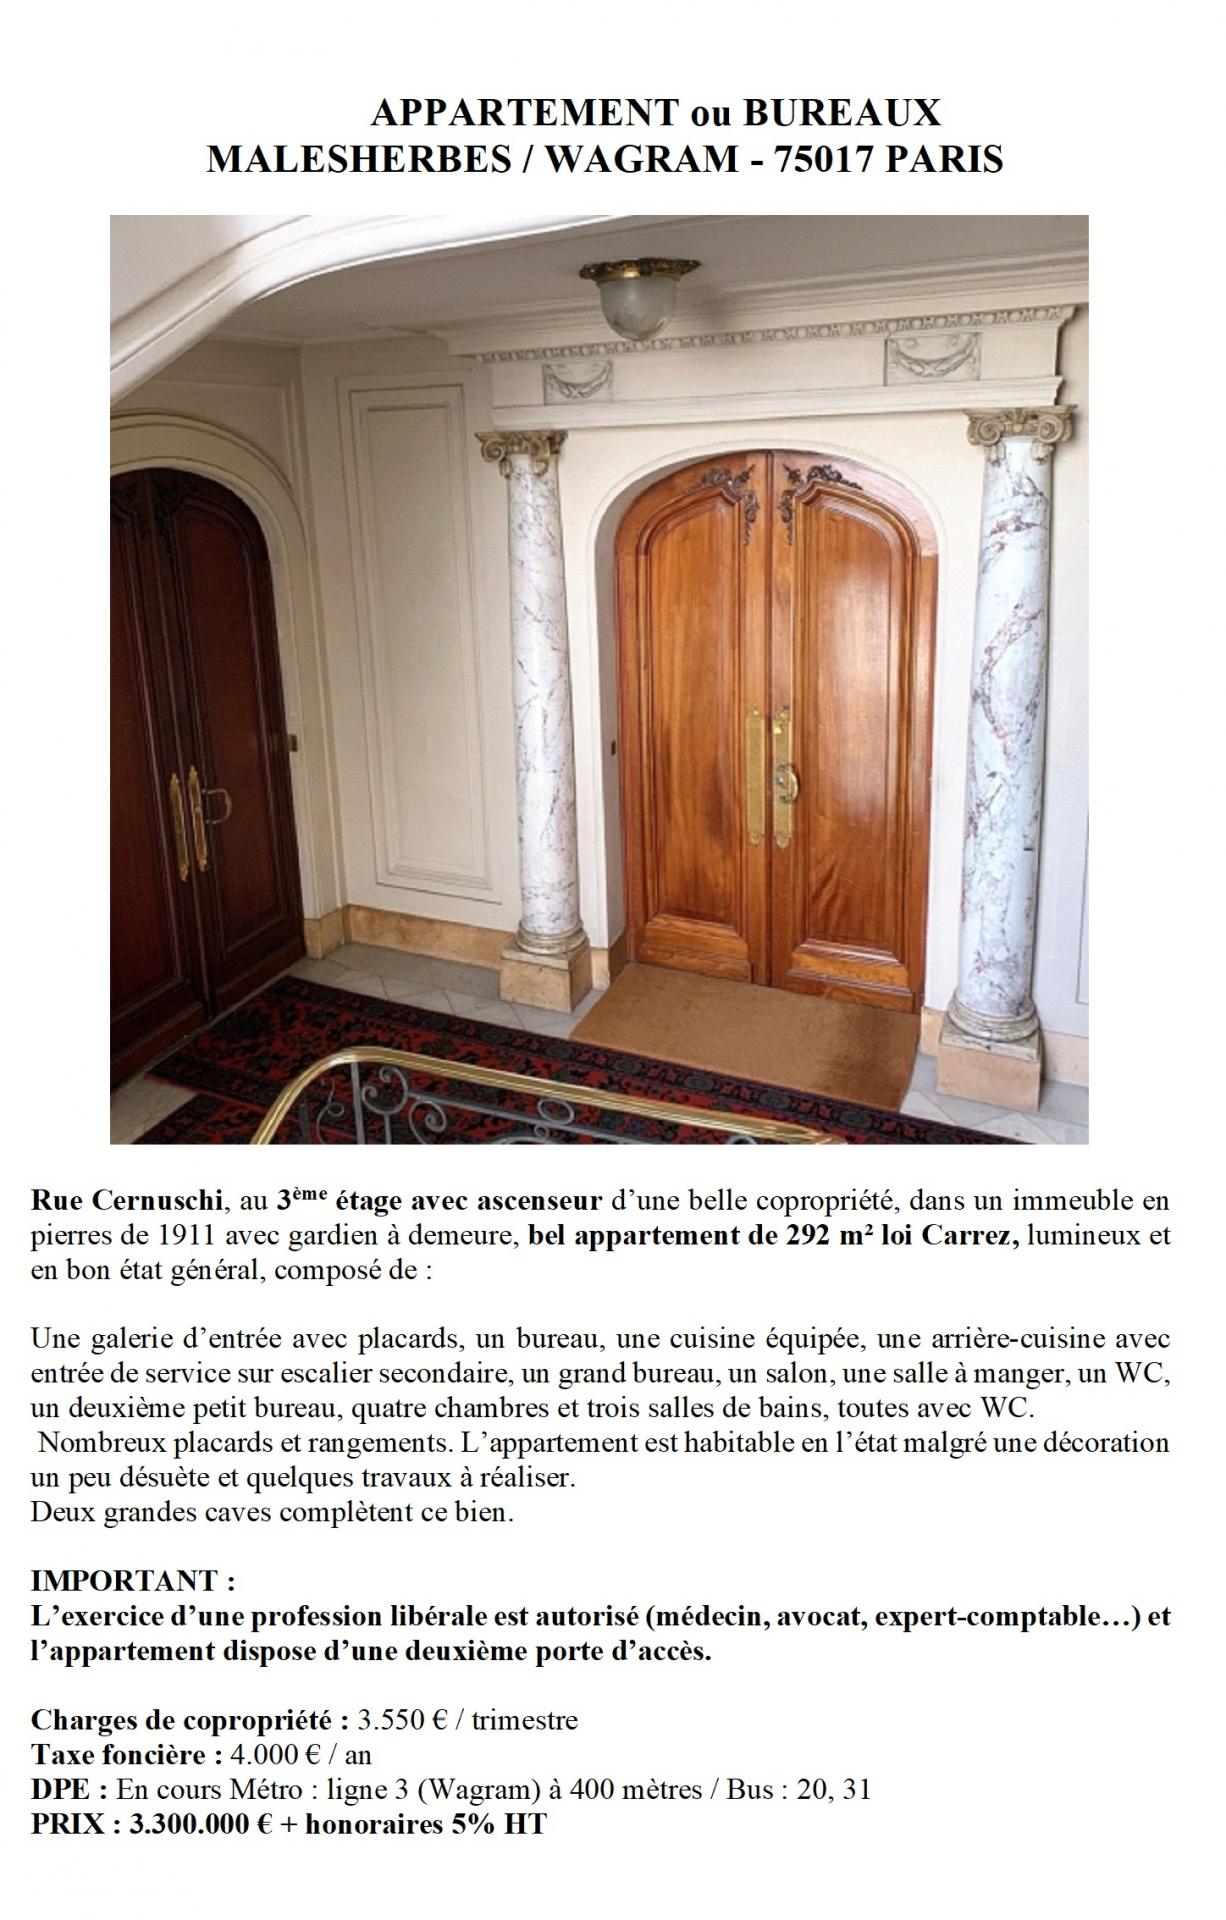 Appartement ou Bureaux de 292 m² à Paris 17ème ( Malesherbes-Wagram)  : 3, 3 M €